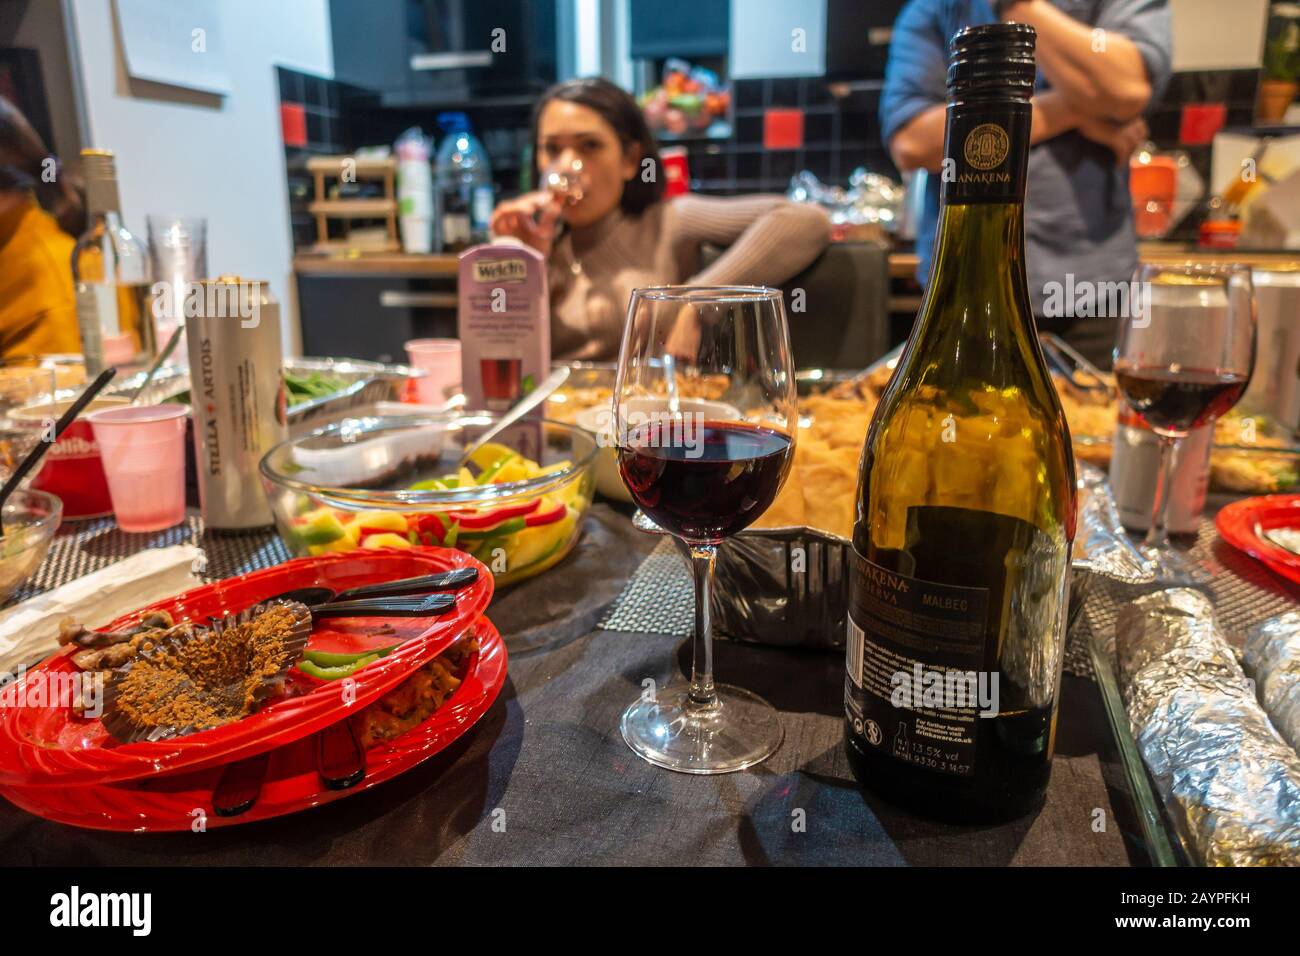 Cibo, bevande, bicchieri, bottiglia di vino, piatti di plastica su un tavolo a buffet a una festa. Foto Stock